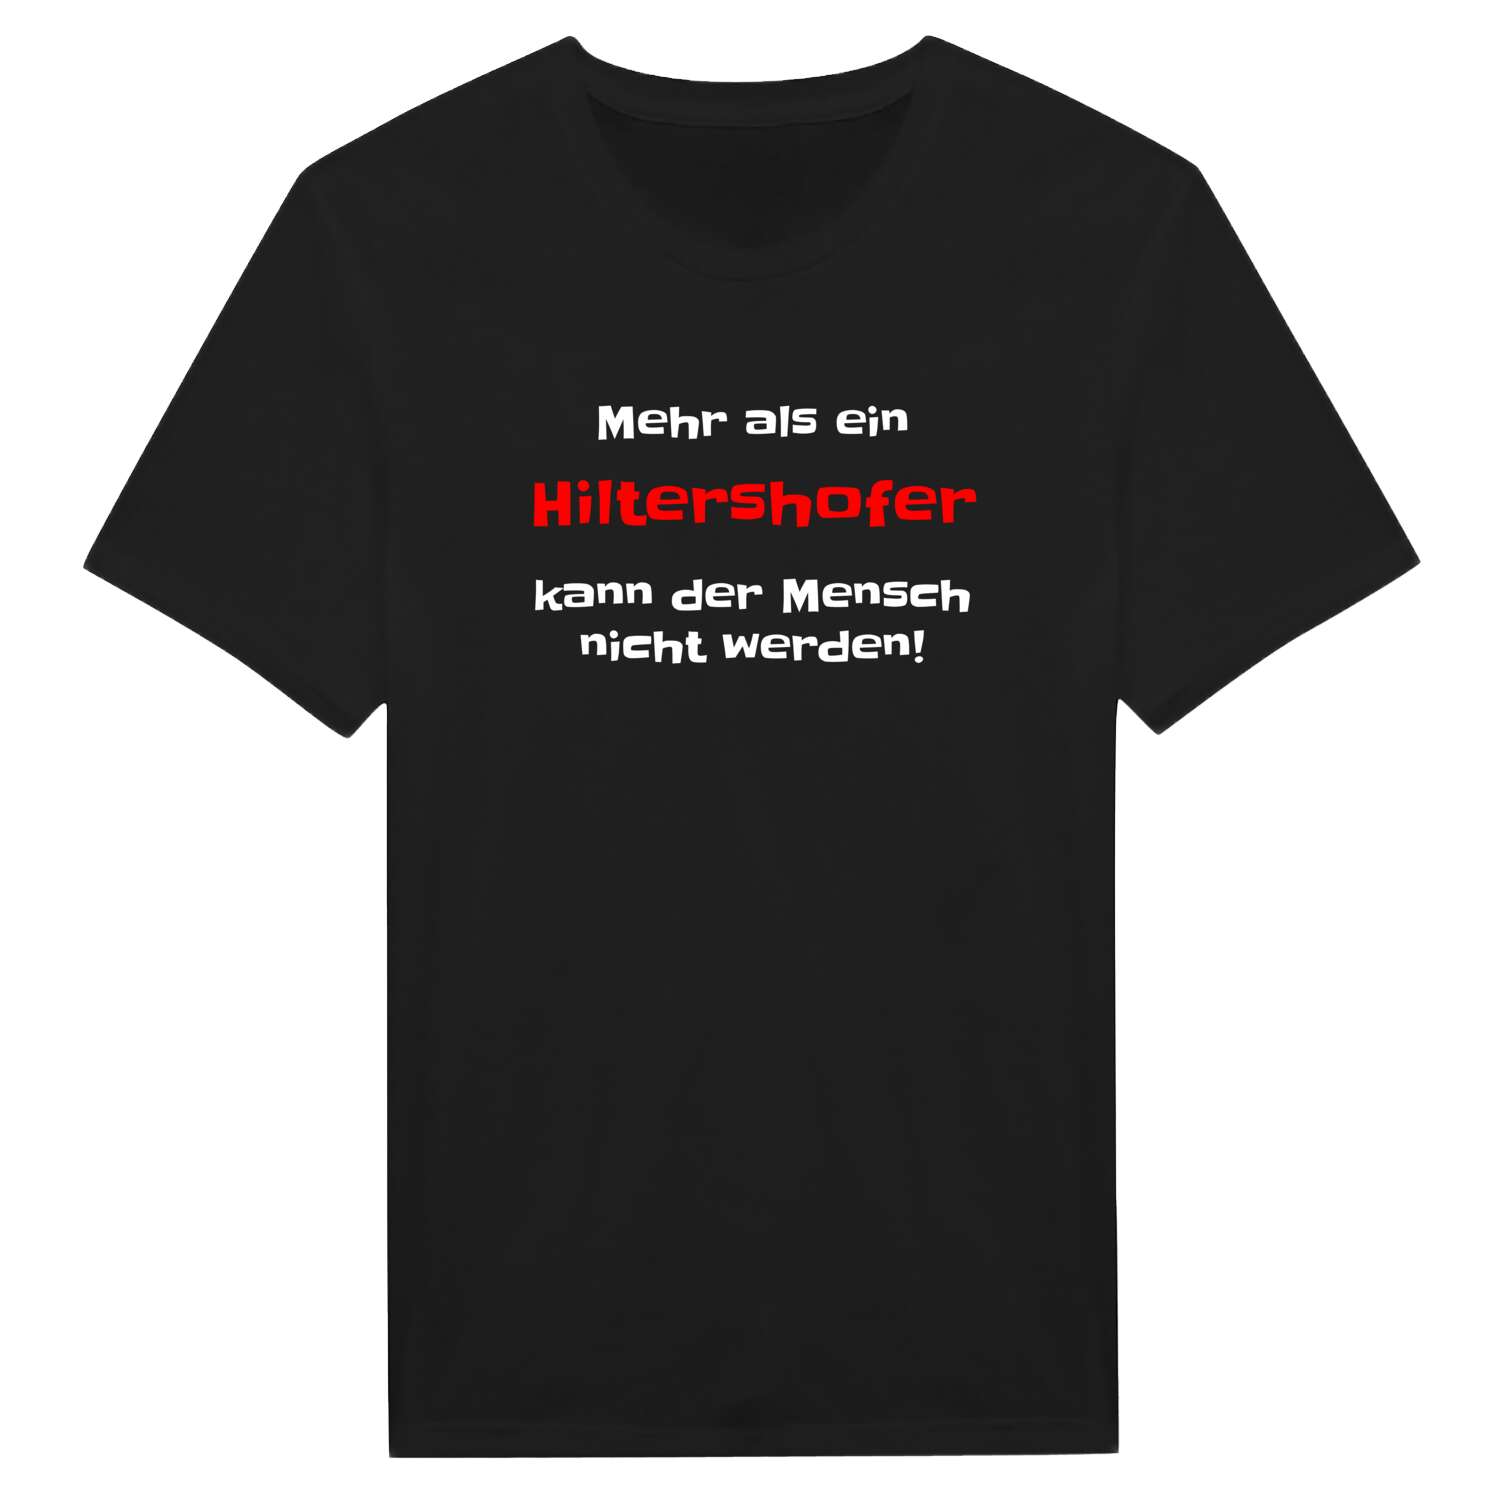 Hiltershof T-Shirt »Mehr als ein«